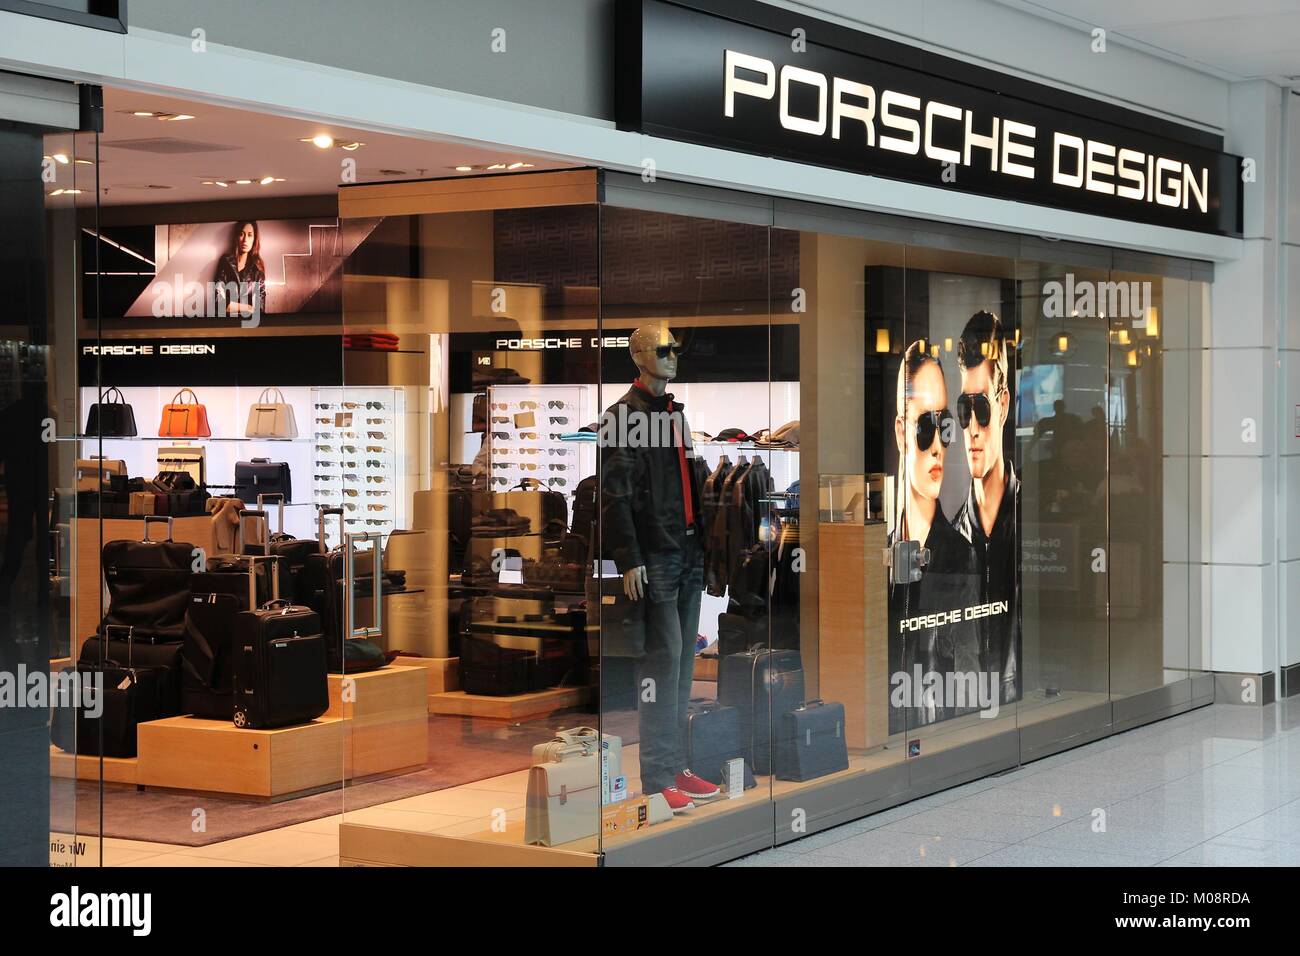 Porsche design store immagini e fotografie stock ad alta risoluzione - Alamy